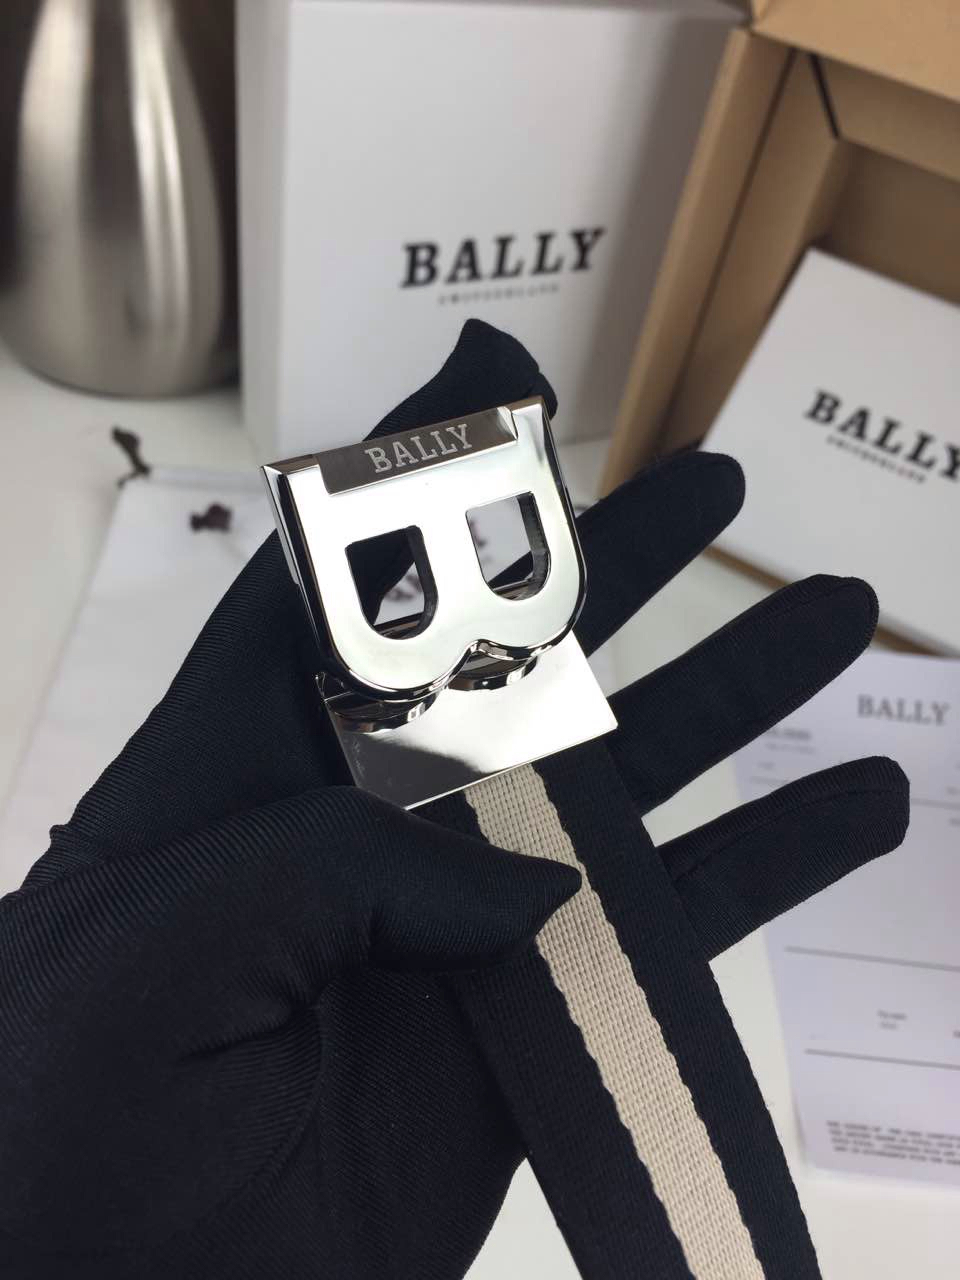 Bally 巴莉 男士皮带 带身白色拼黑色 360度旋转不锈钢扣